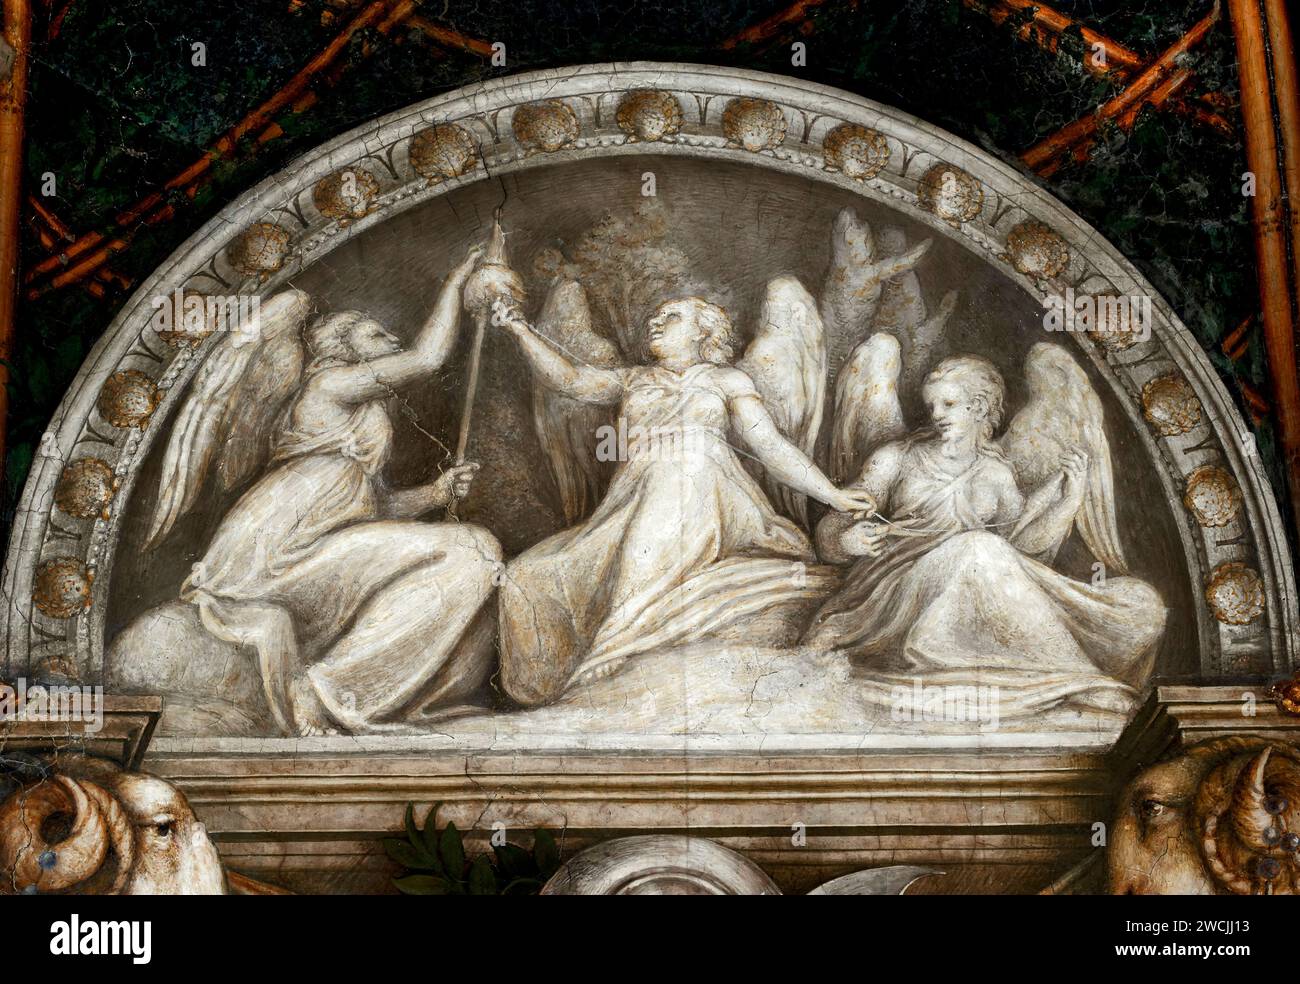 Le tre Parche - affresco - Alessandro Allegri detto il Correggio - 1519 - Parma, Convento di San Paolo, appartamento della Badessa Giovanna da Piacenz Foto Stock